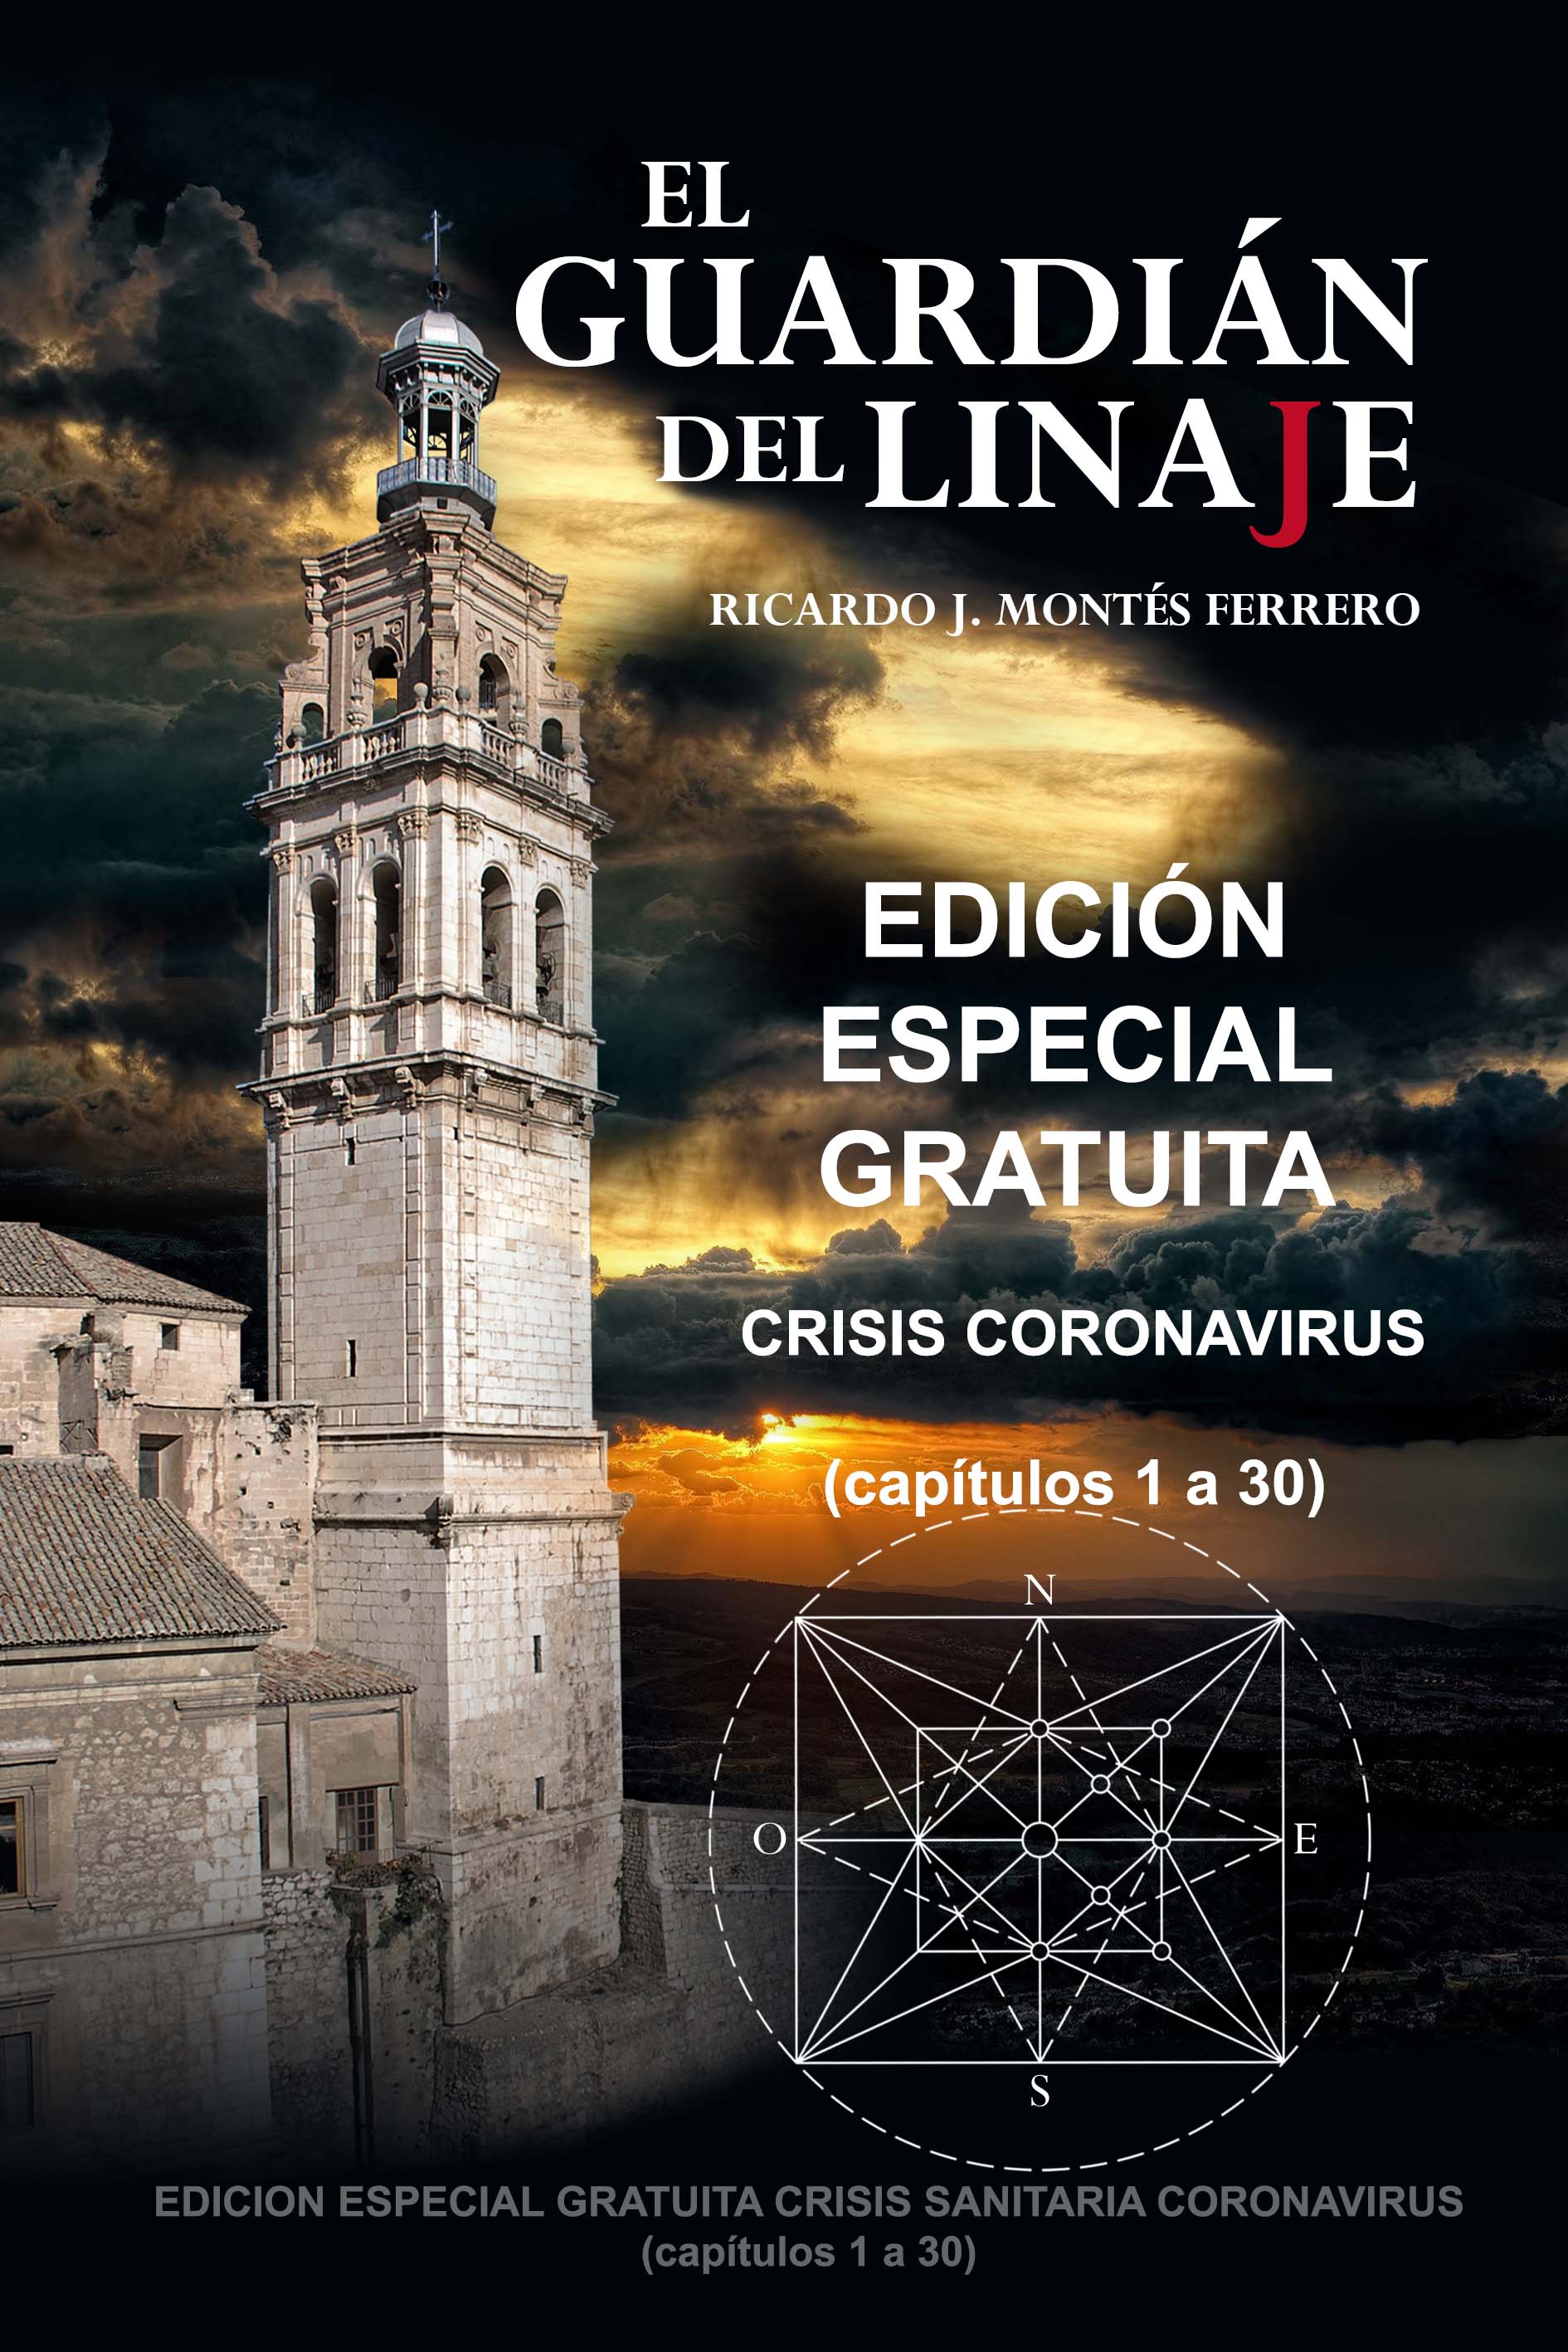 "El Guardián del Linaje", Edición Especial Gratuita Crisis Coronavirus 21-3-20